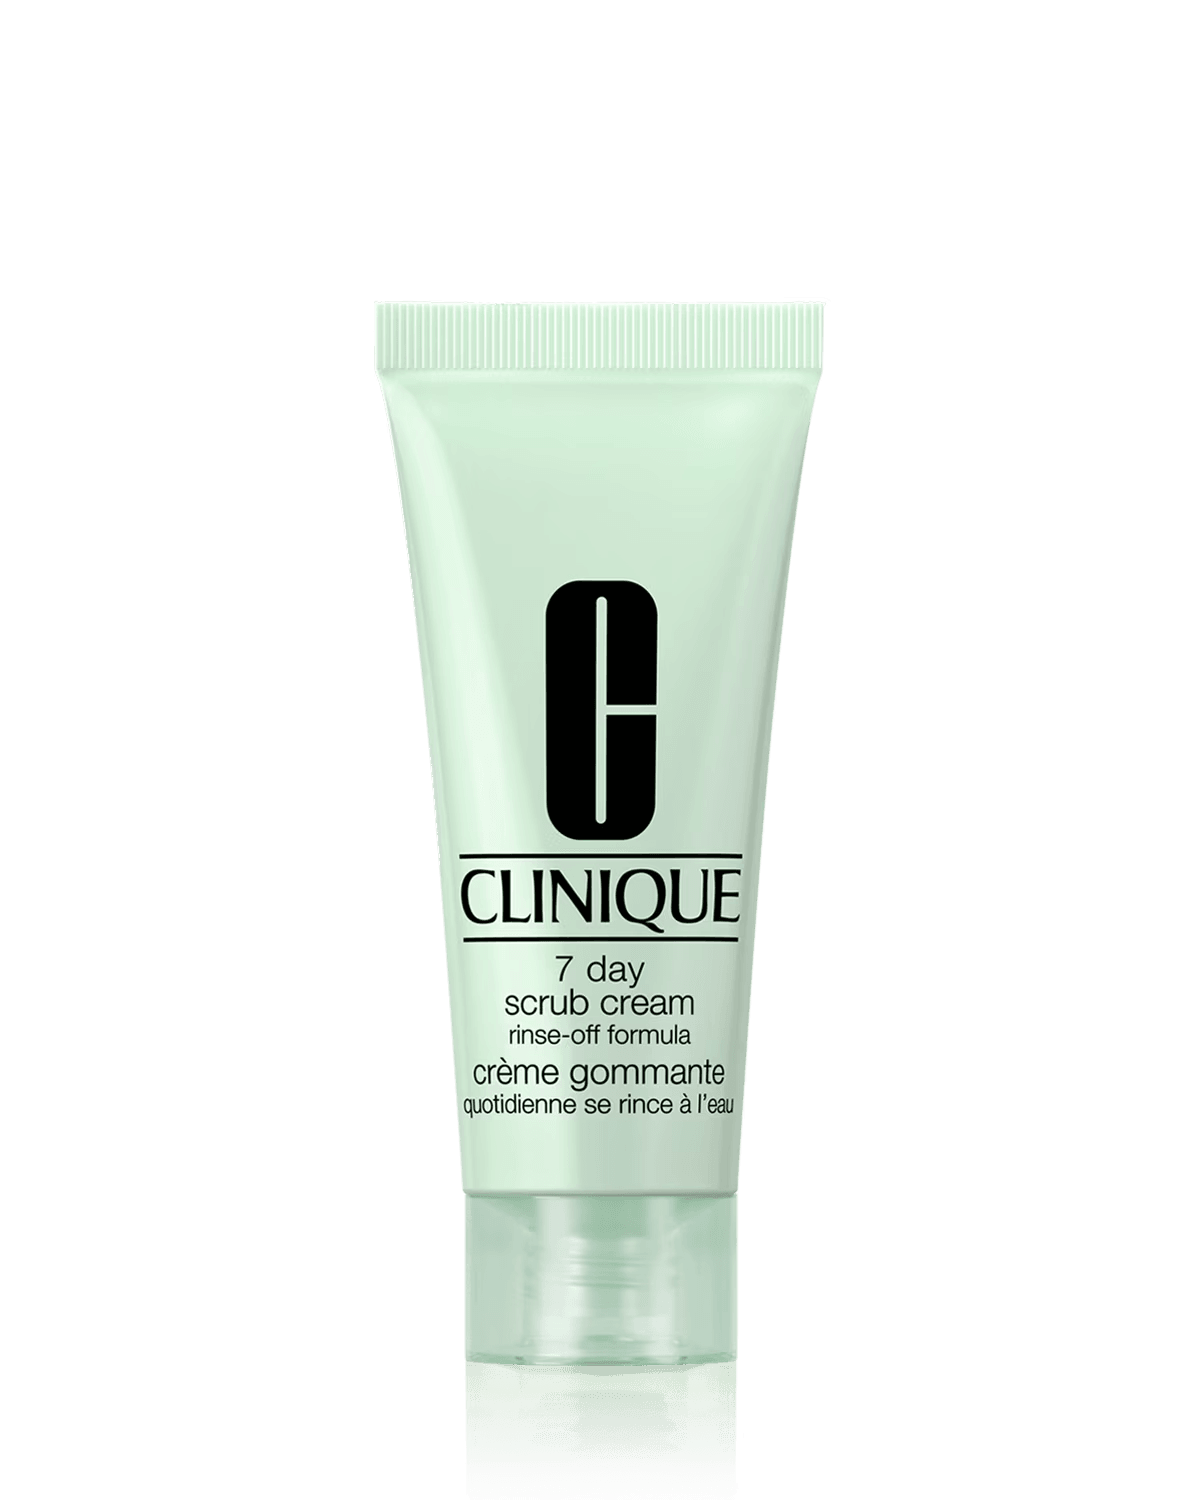 Крем-скраб Clinique 7 Day Rinse-Off Formula, 15 мл крем скраб для лица clinique 7 day scrub cream rinse off formula